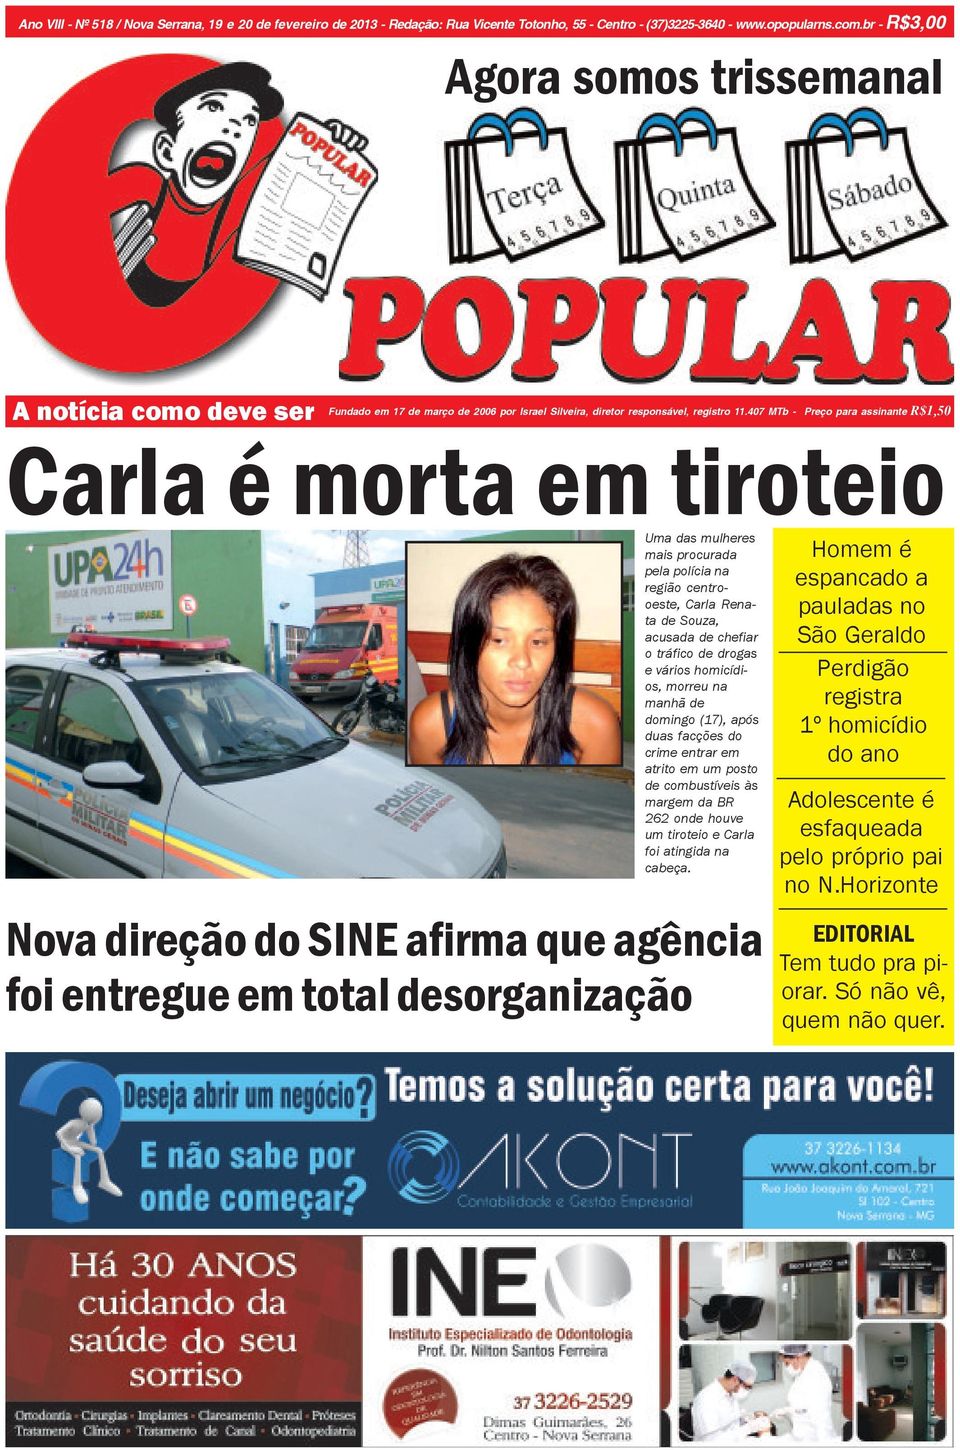 407 MTb - Preço para assinante R$1,50 Carla é morta em tiroteio Uma das mulheres mais procurada pela polícia na região centrooeste, Carla Renata de Souza, acusada de chefiar o tráfico de drogas e